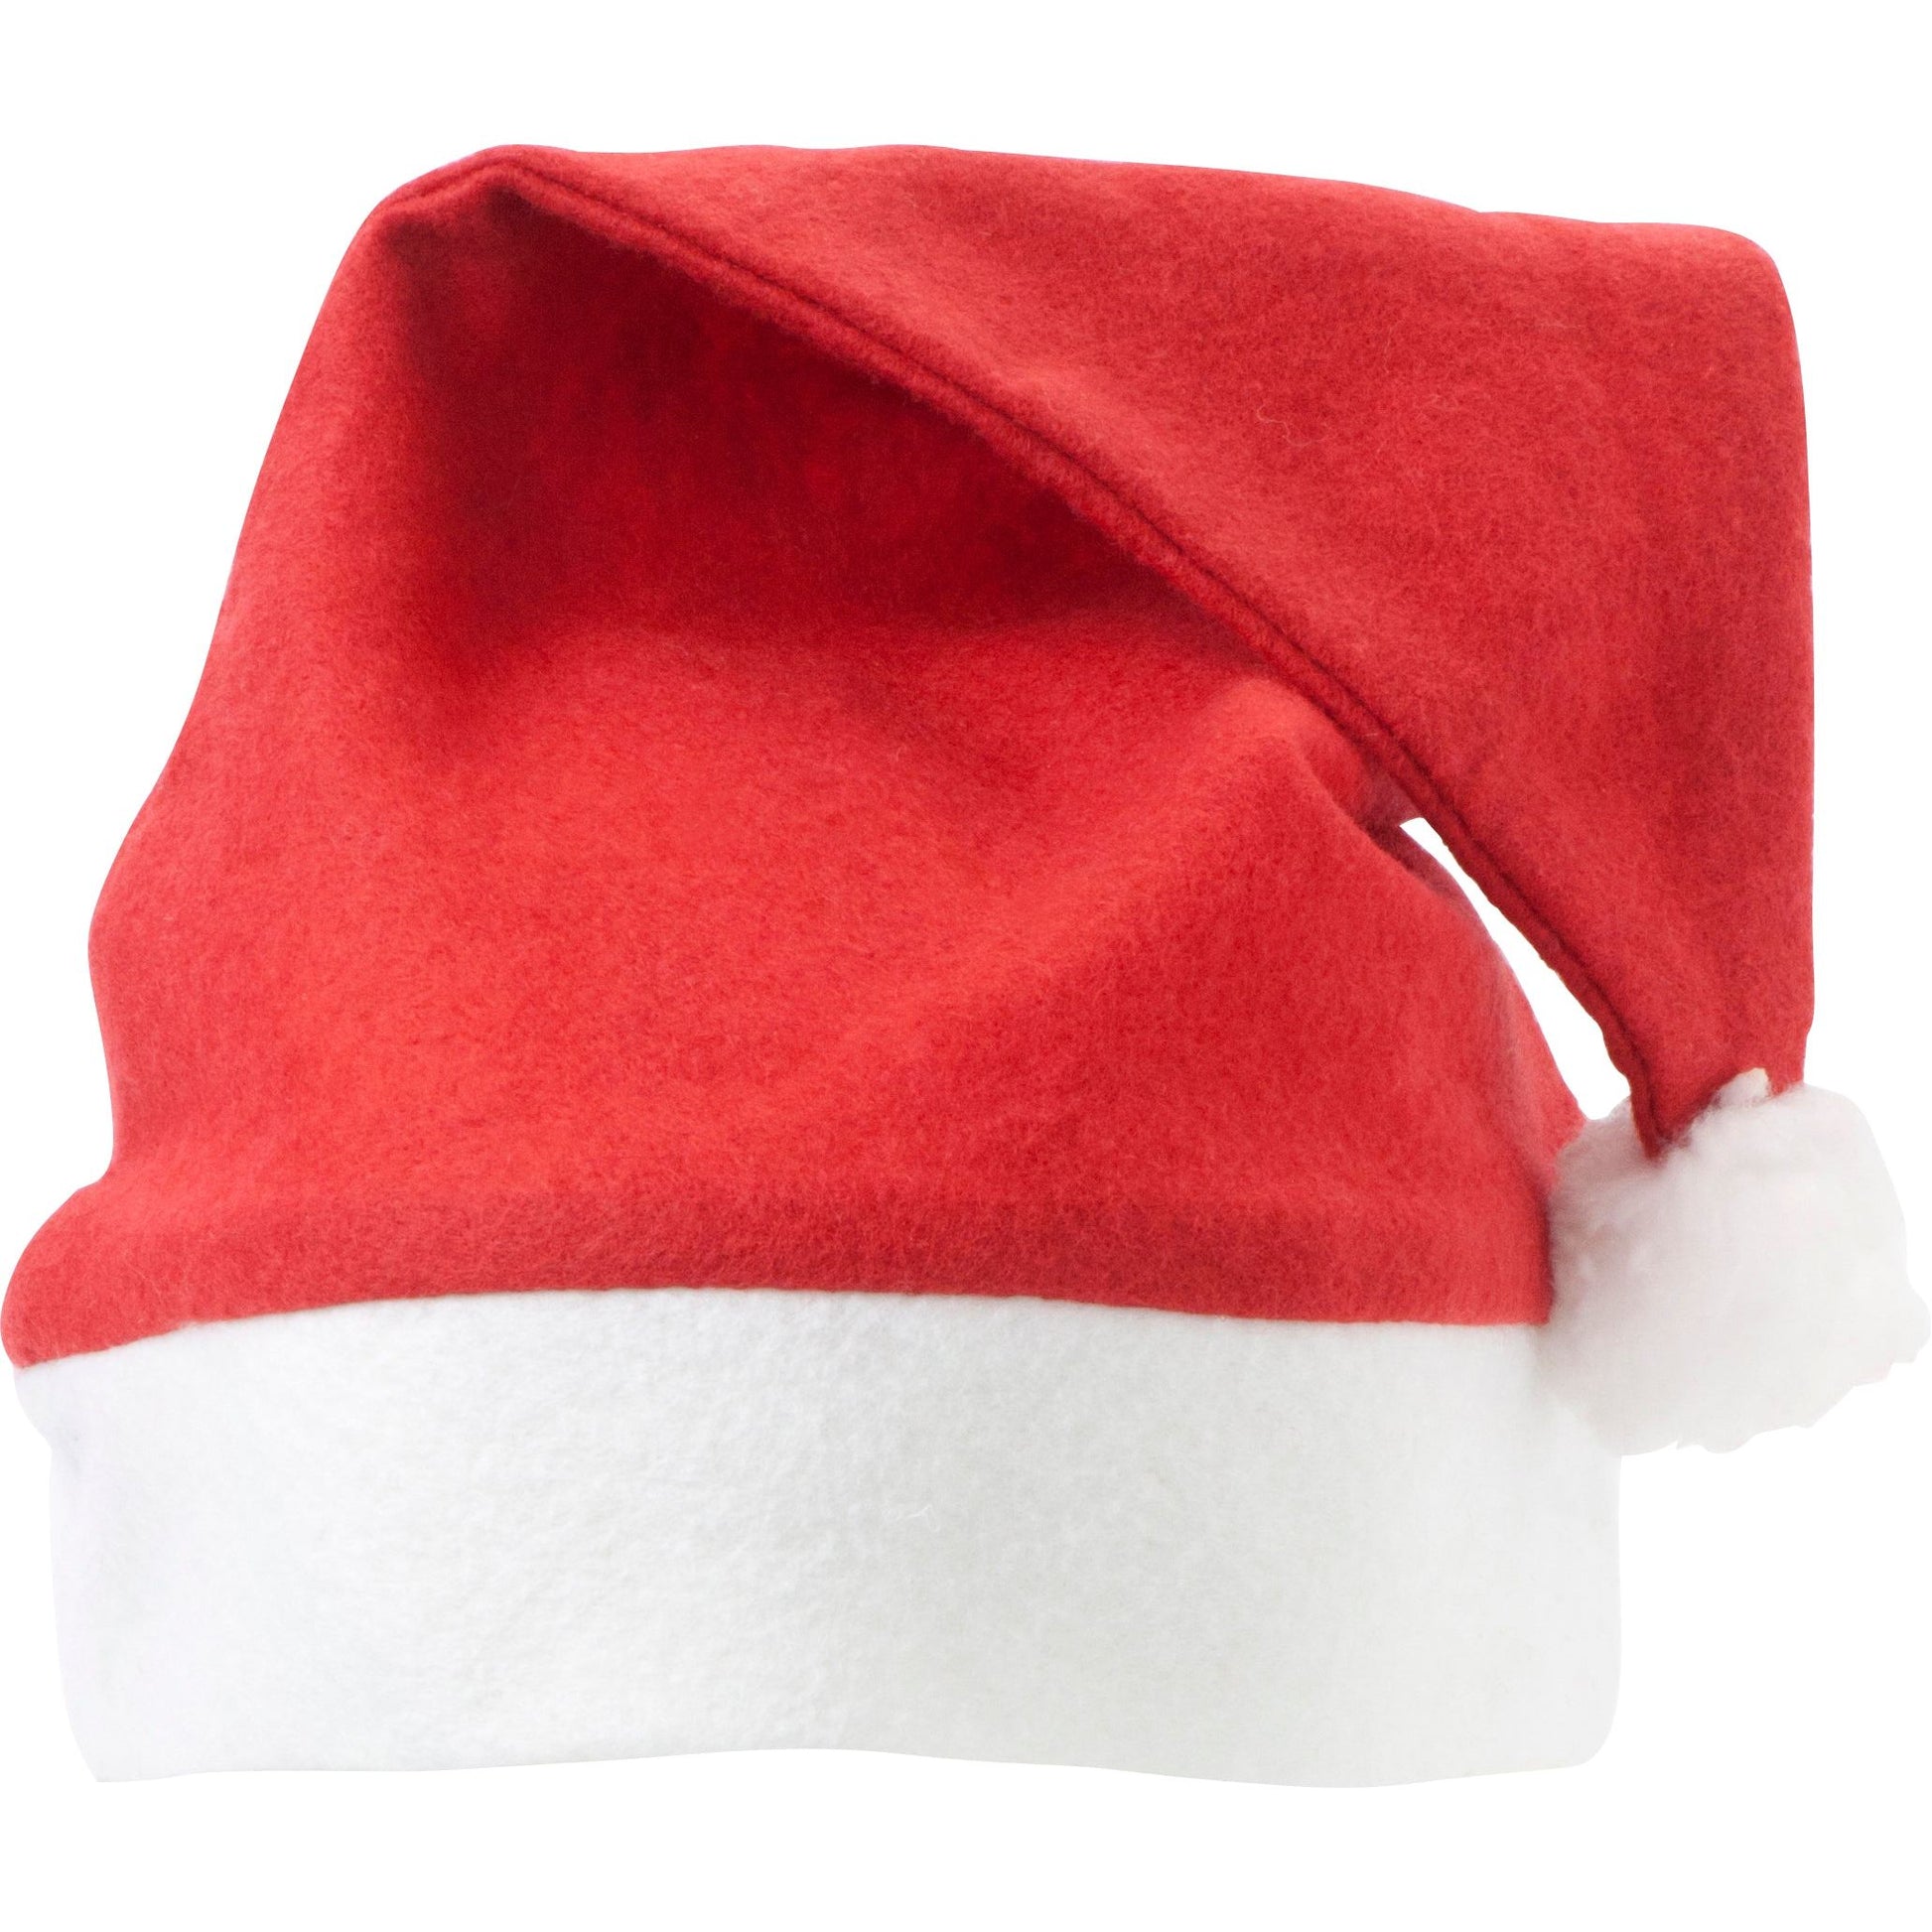 Branded Custom Felt Christmas hat  Black and White London